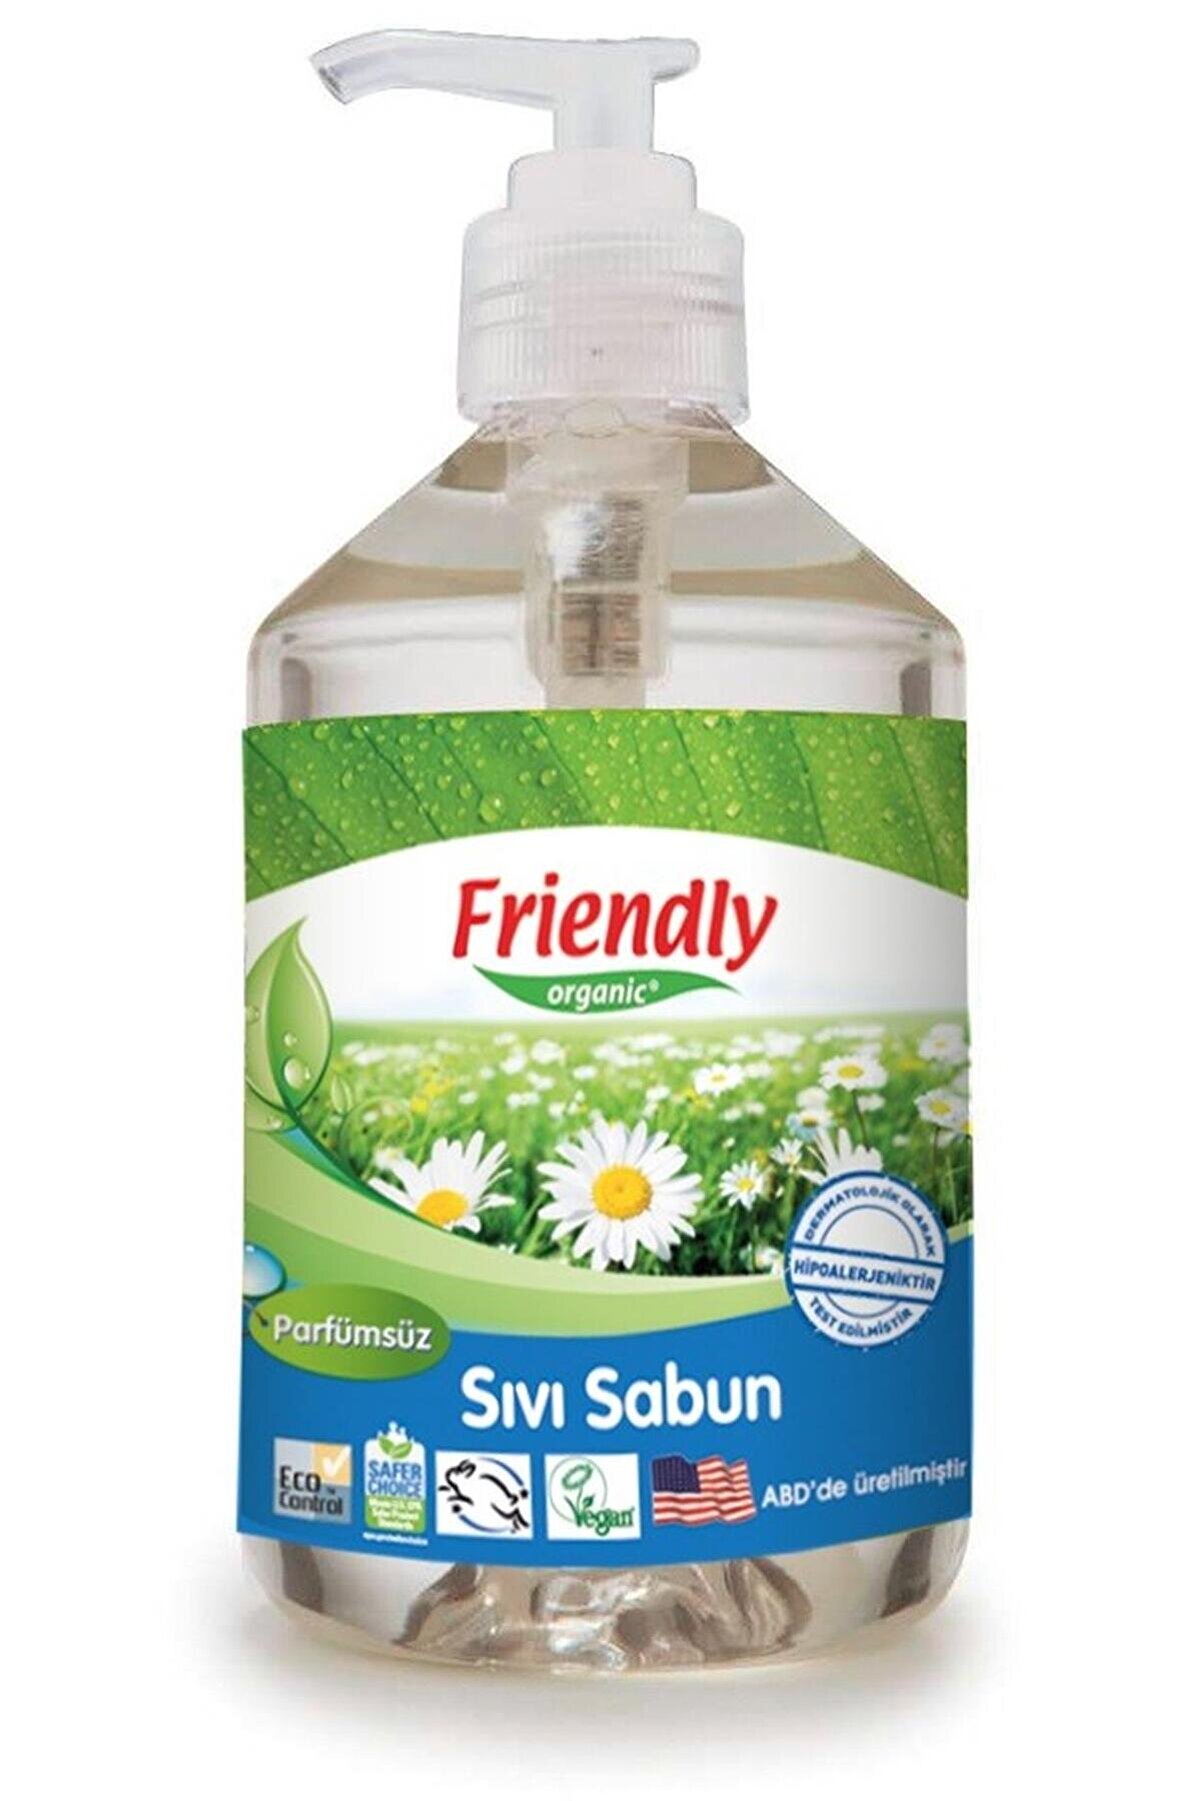 Friendly Organic Sıvı El Sabunu Parfümsüz - 500 ml